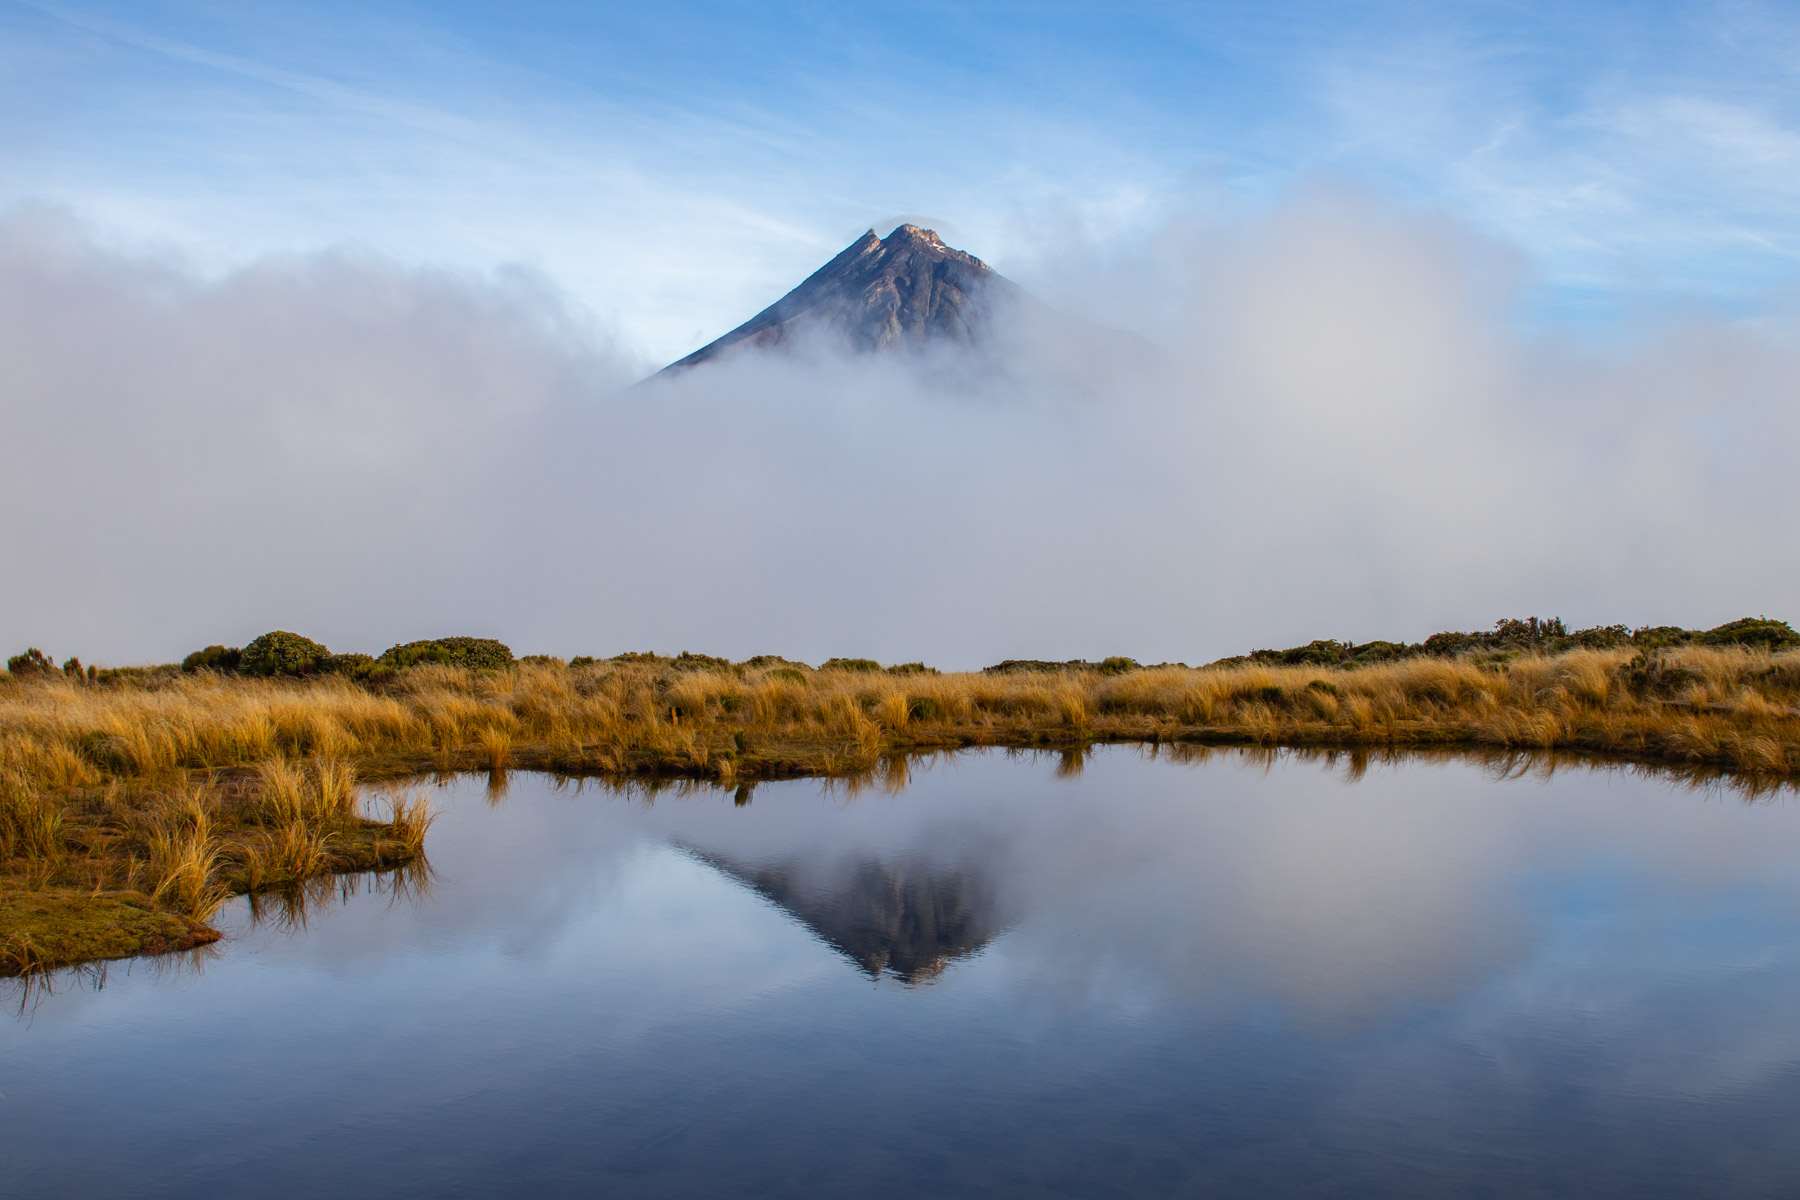 Le sommet d’un volcan dépasse les nuages et se reflète sur les eaux paisibles d’un petit étang bordé par de hautes herbes jaunes.